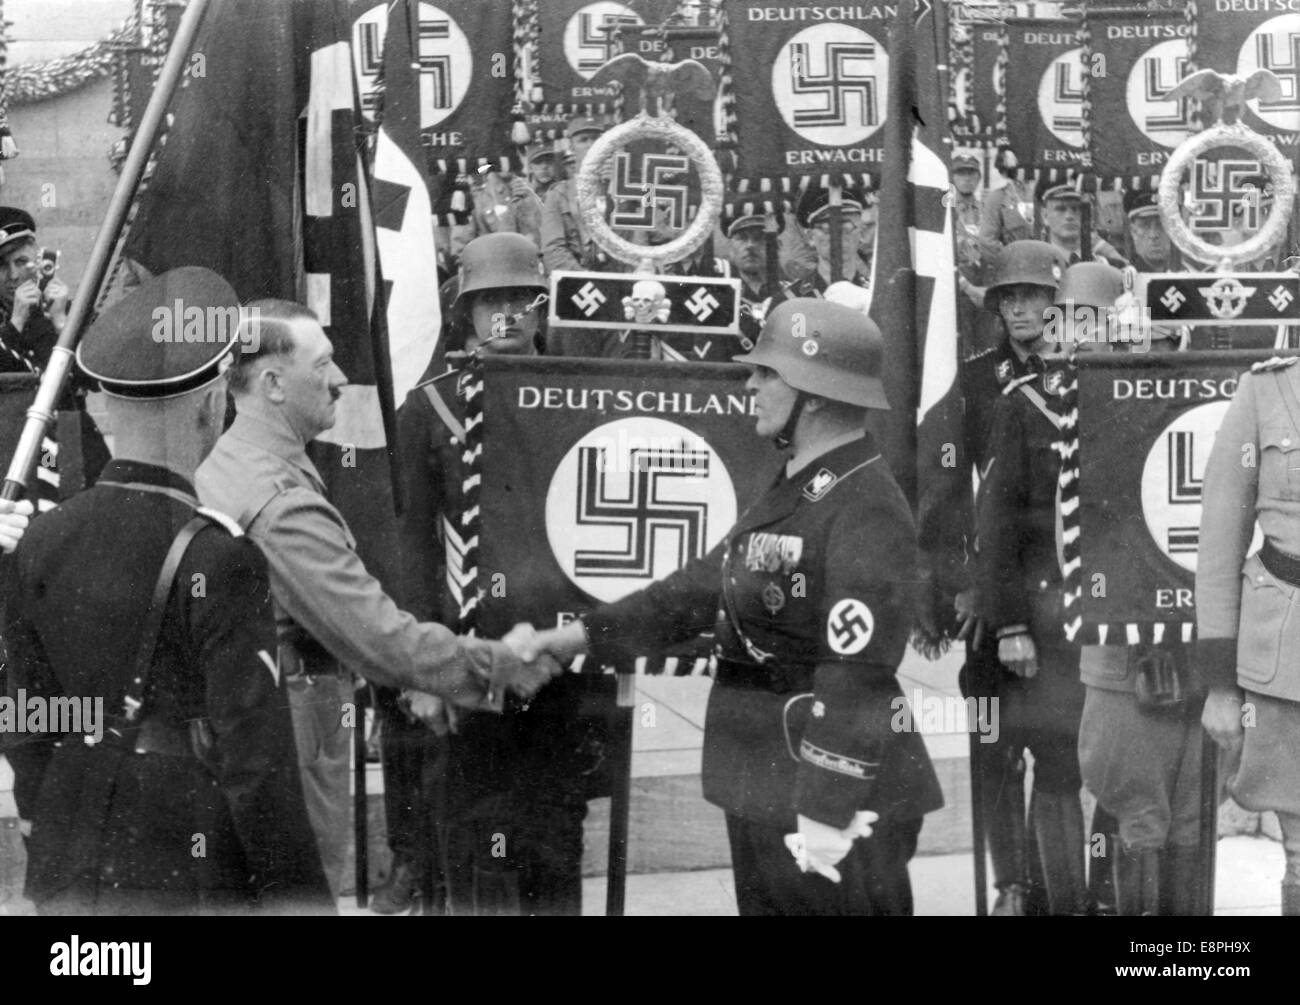 Nürnberger Rallye 1937 in Nürnberg – Adolf Hitler setzt neue Maßstäbe mit der „Blutflagge“ beim Appell der Sturmabteilung (SA), Schutzstaffel (SS) und des Nationalen Sozialistischen Kfz-Korps (NSKK), hier nach der Weihung Handschlag. Neue Standards wurden geweiht, indem man sie mit der "Blutflagge" berührte, die angeblich in der gescheiterten Bierhalle Putsch in München getragen wurde. (Qualitätsmängel aufgrund der historischen Bildkopie) Fotoarchiv für Zeitgeschichtee - KEIN KABELDIENST - Stockfoto